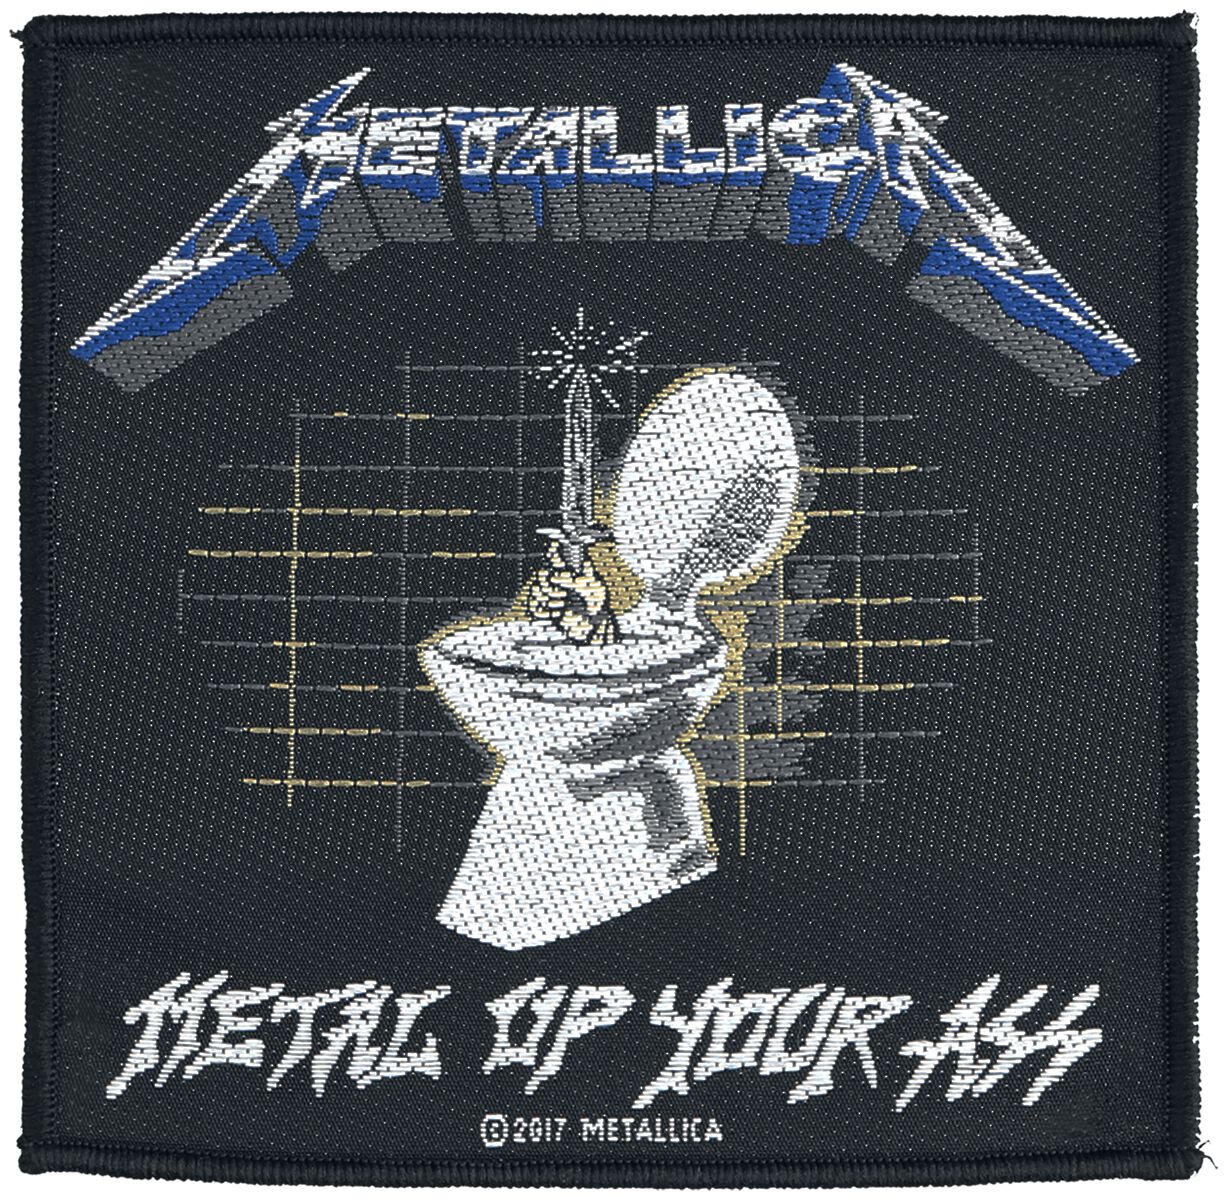 Metallica Patch - Metal Up Your Ass - schwarz/weiß/blau  - Lizenziertes Merchandise! von metallica